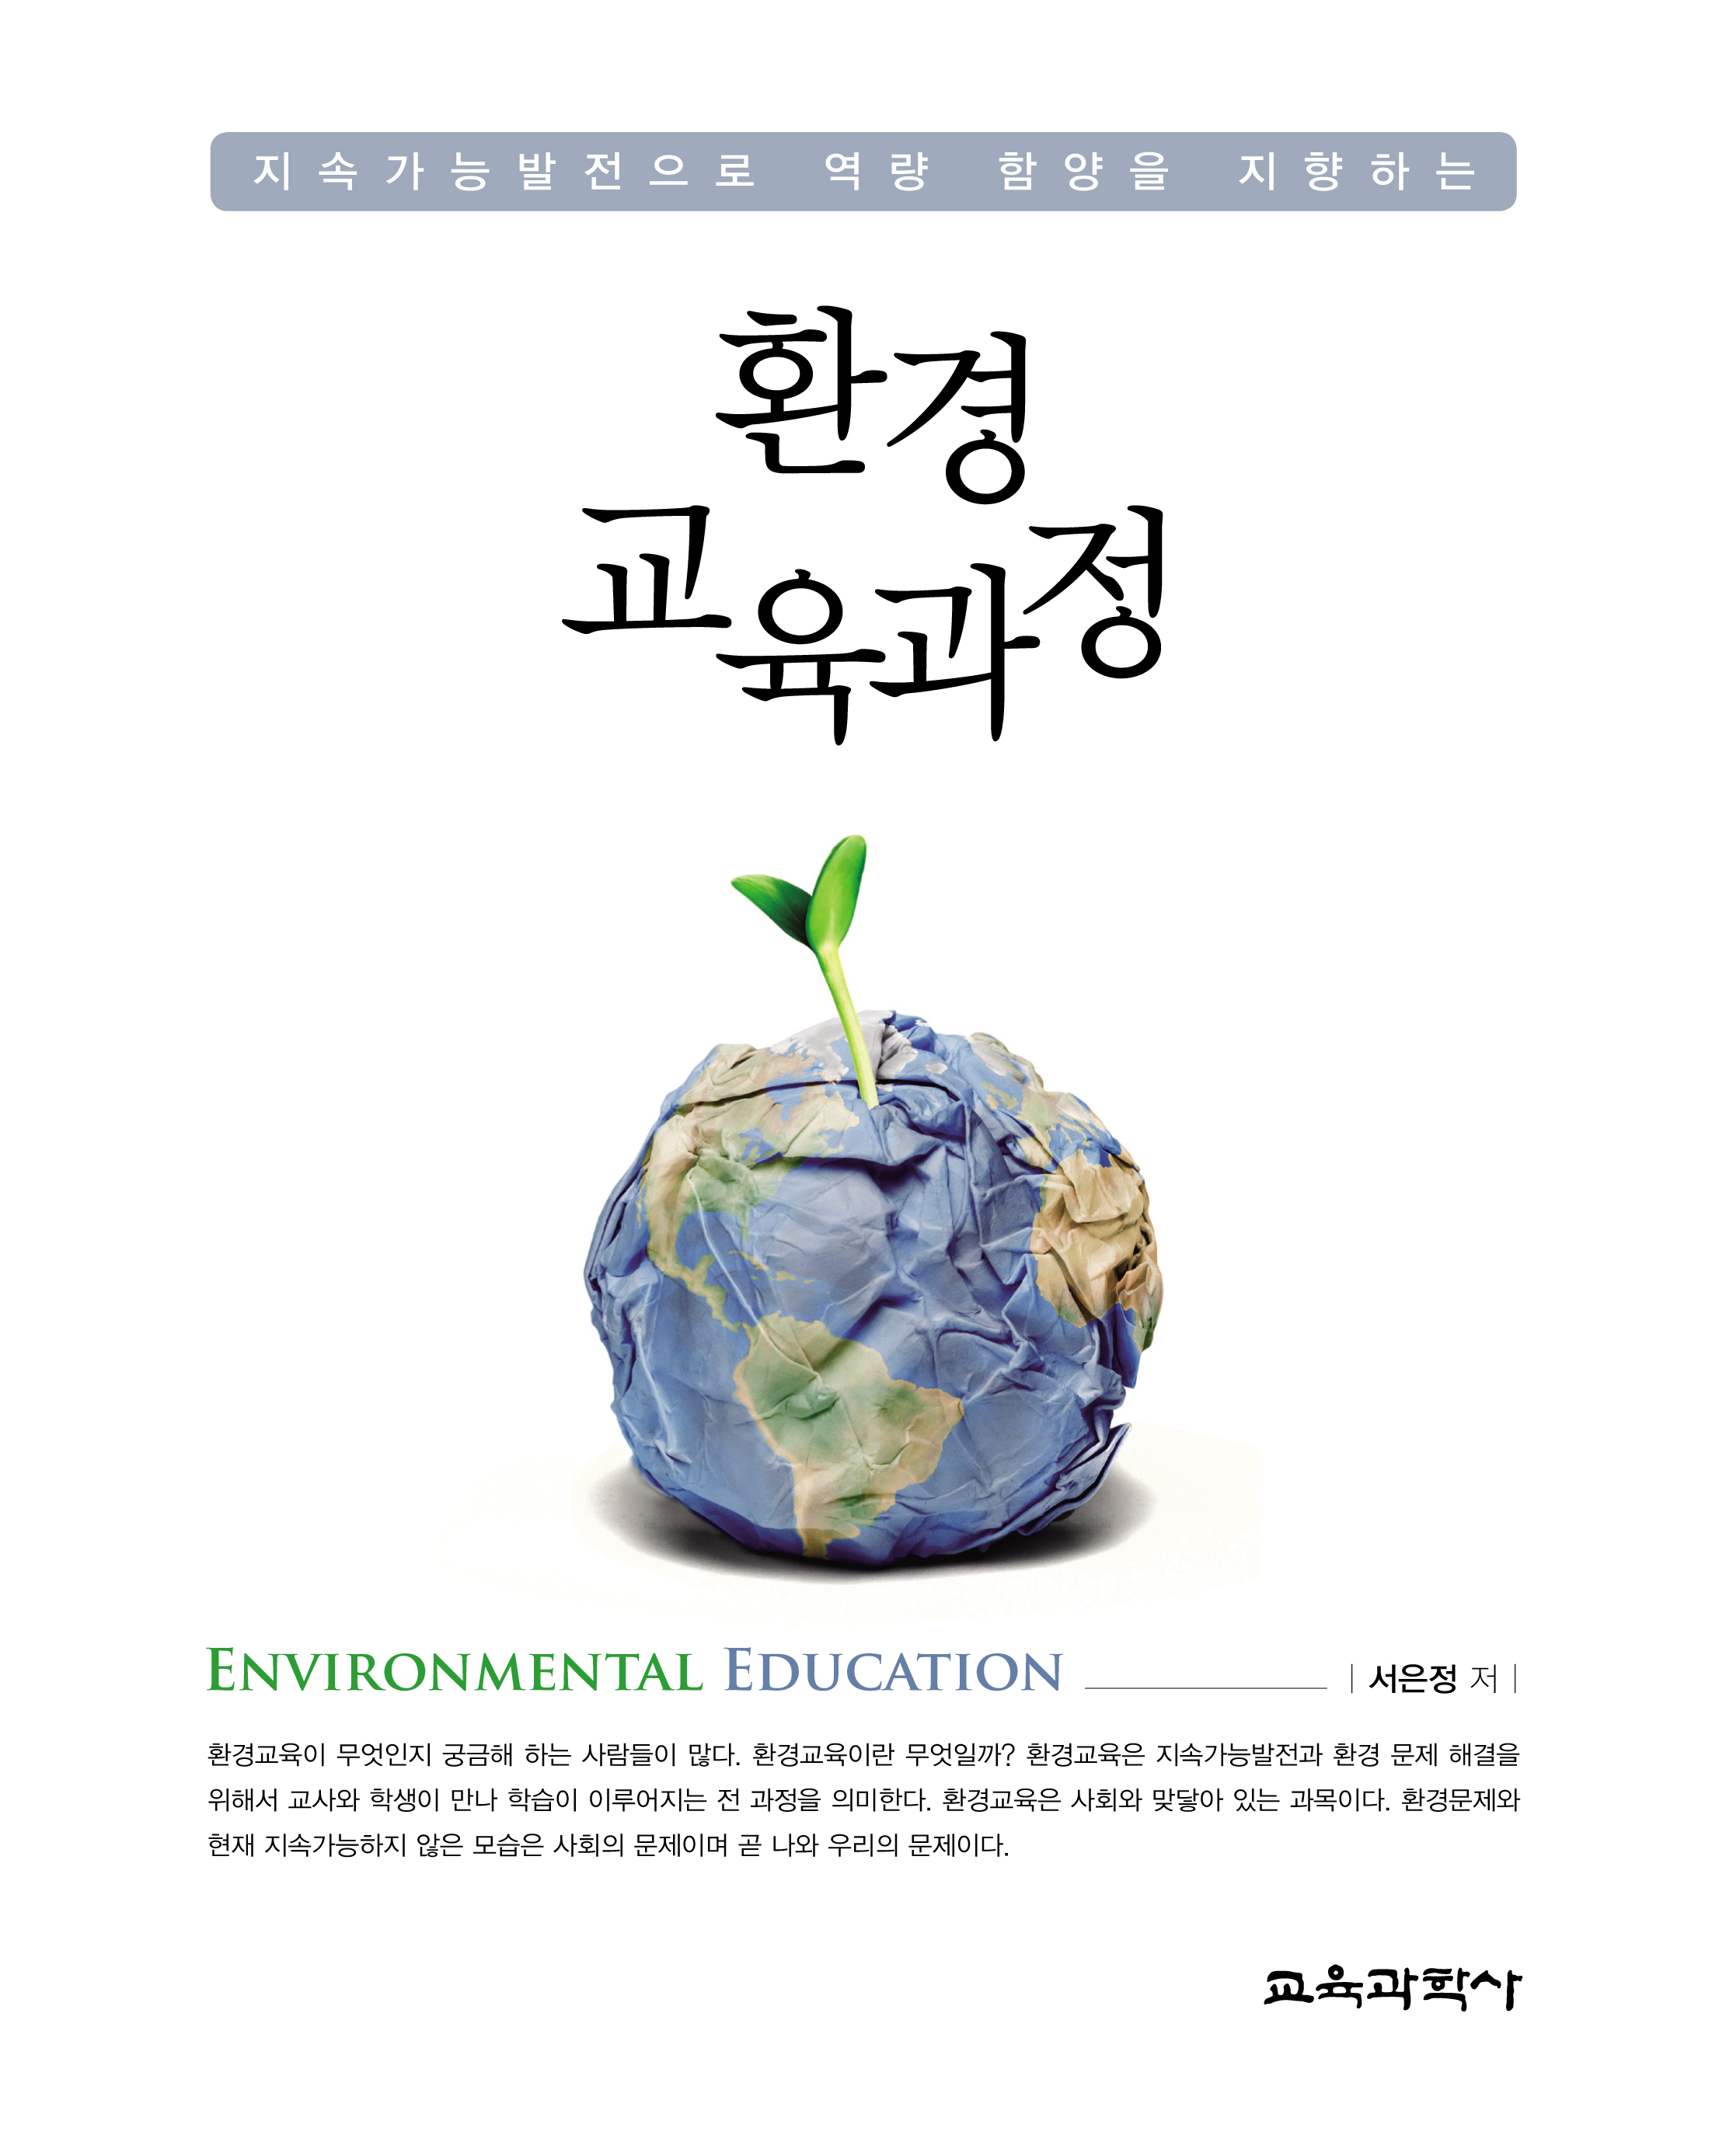 지속가능발전으로 역량 함양을 지향하는 환경 교육과정